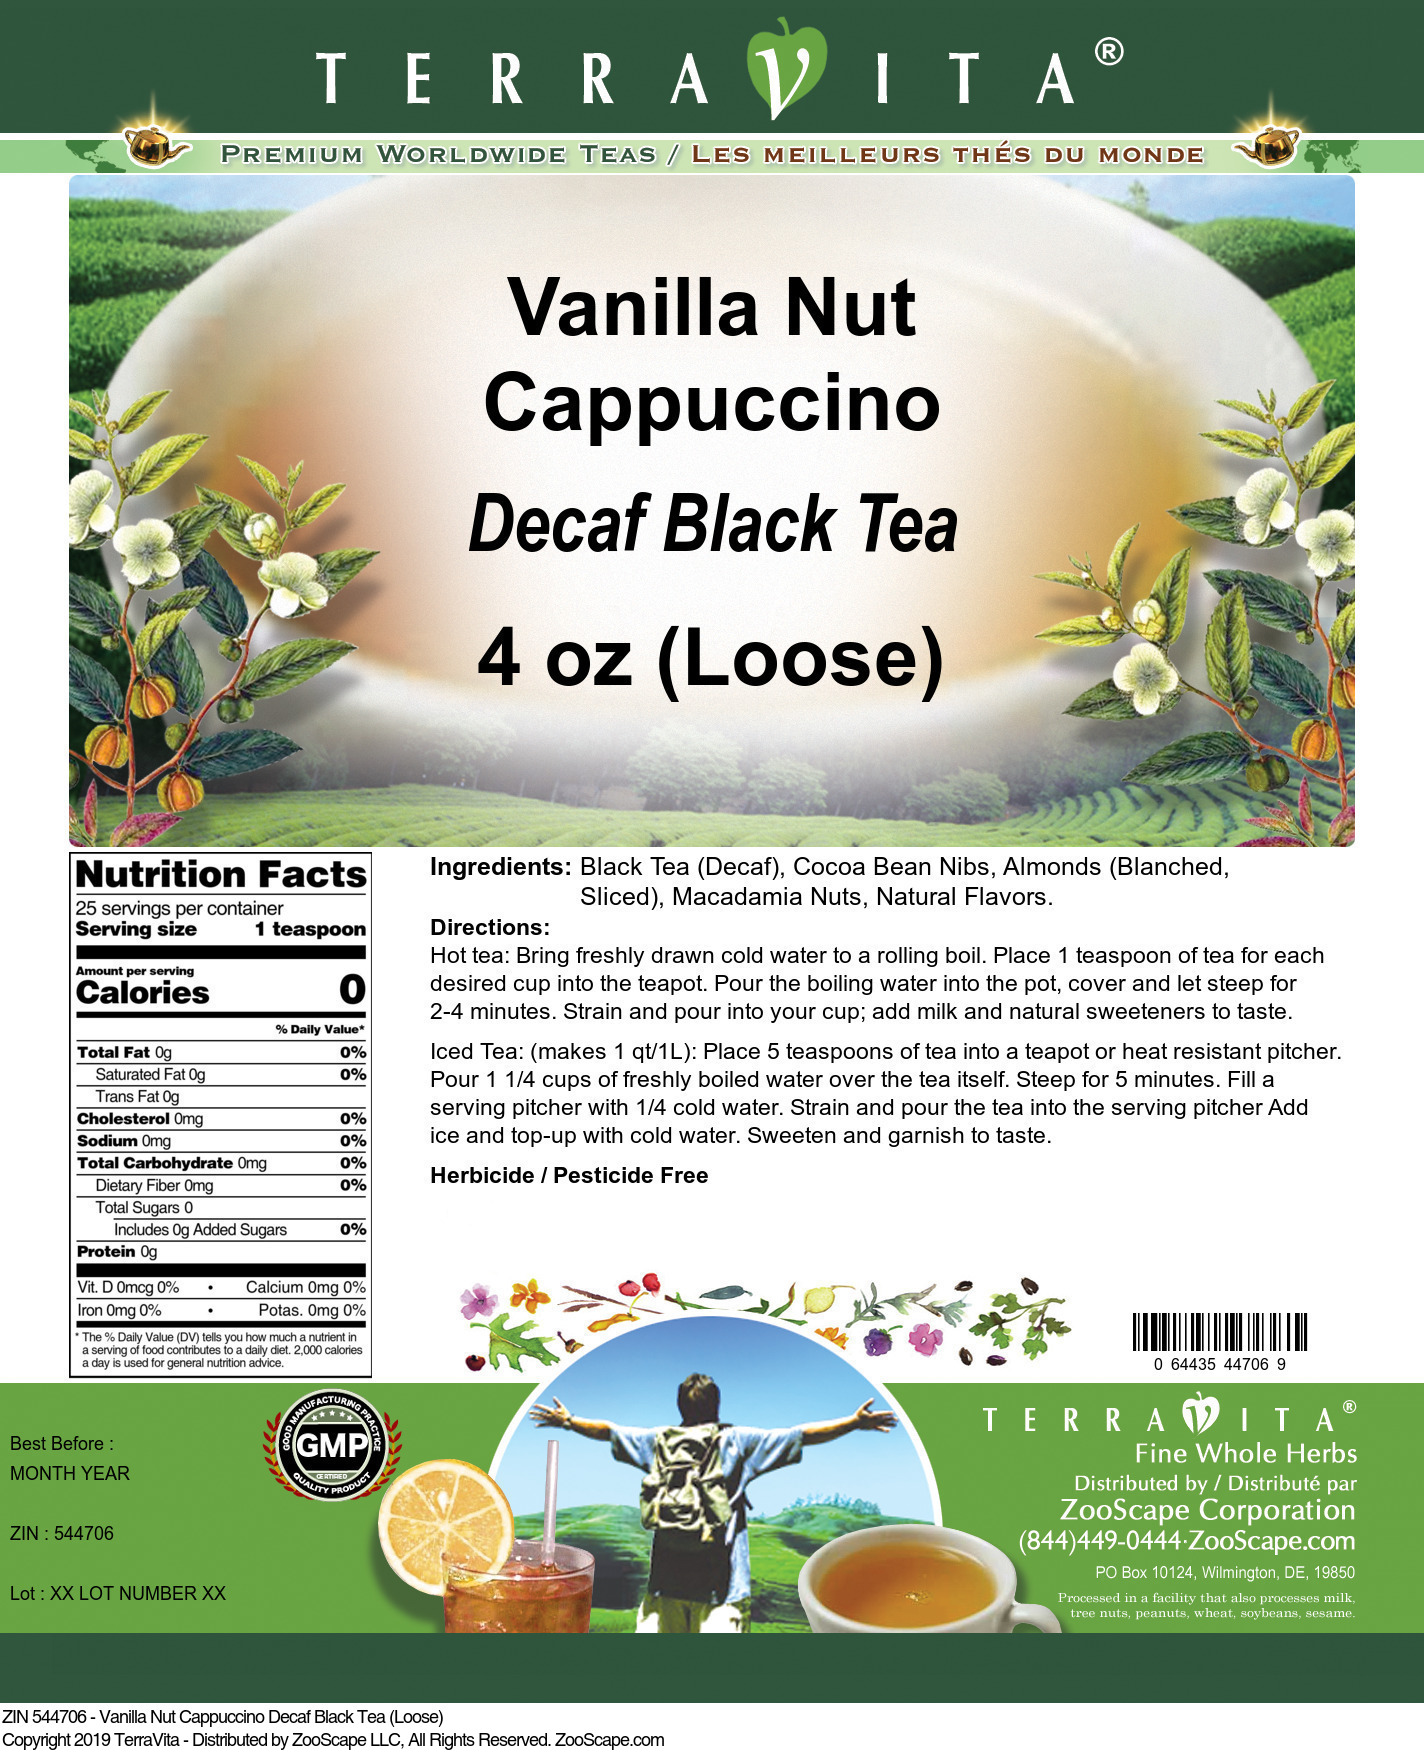 Vanilla Nut Cappuccino Decaf Black Tea (Loose) - Label